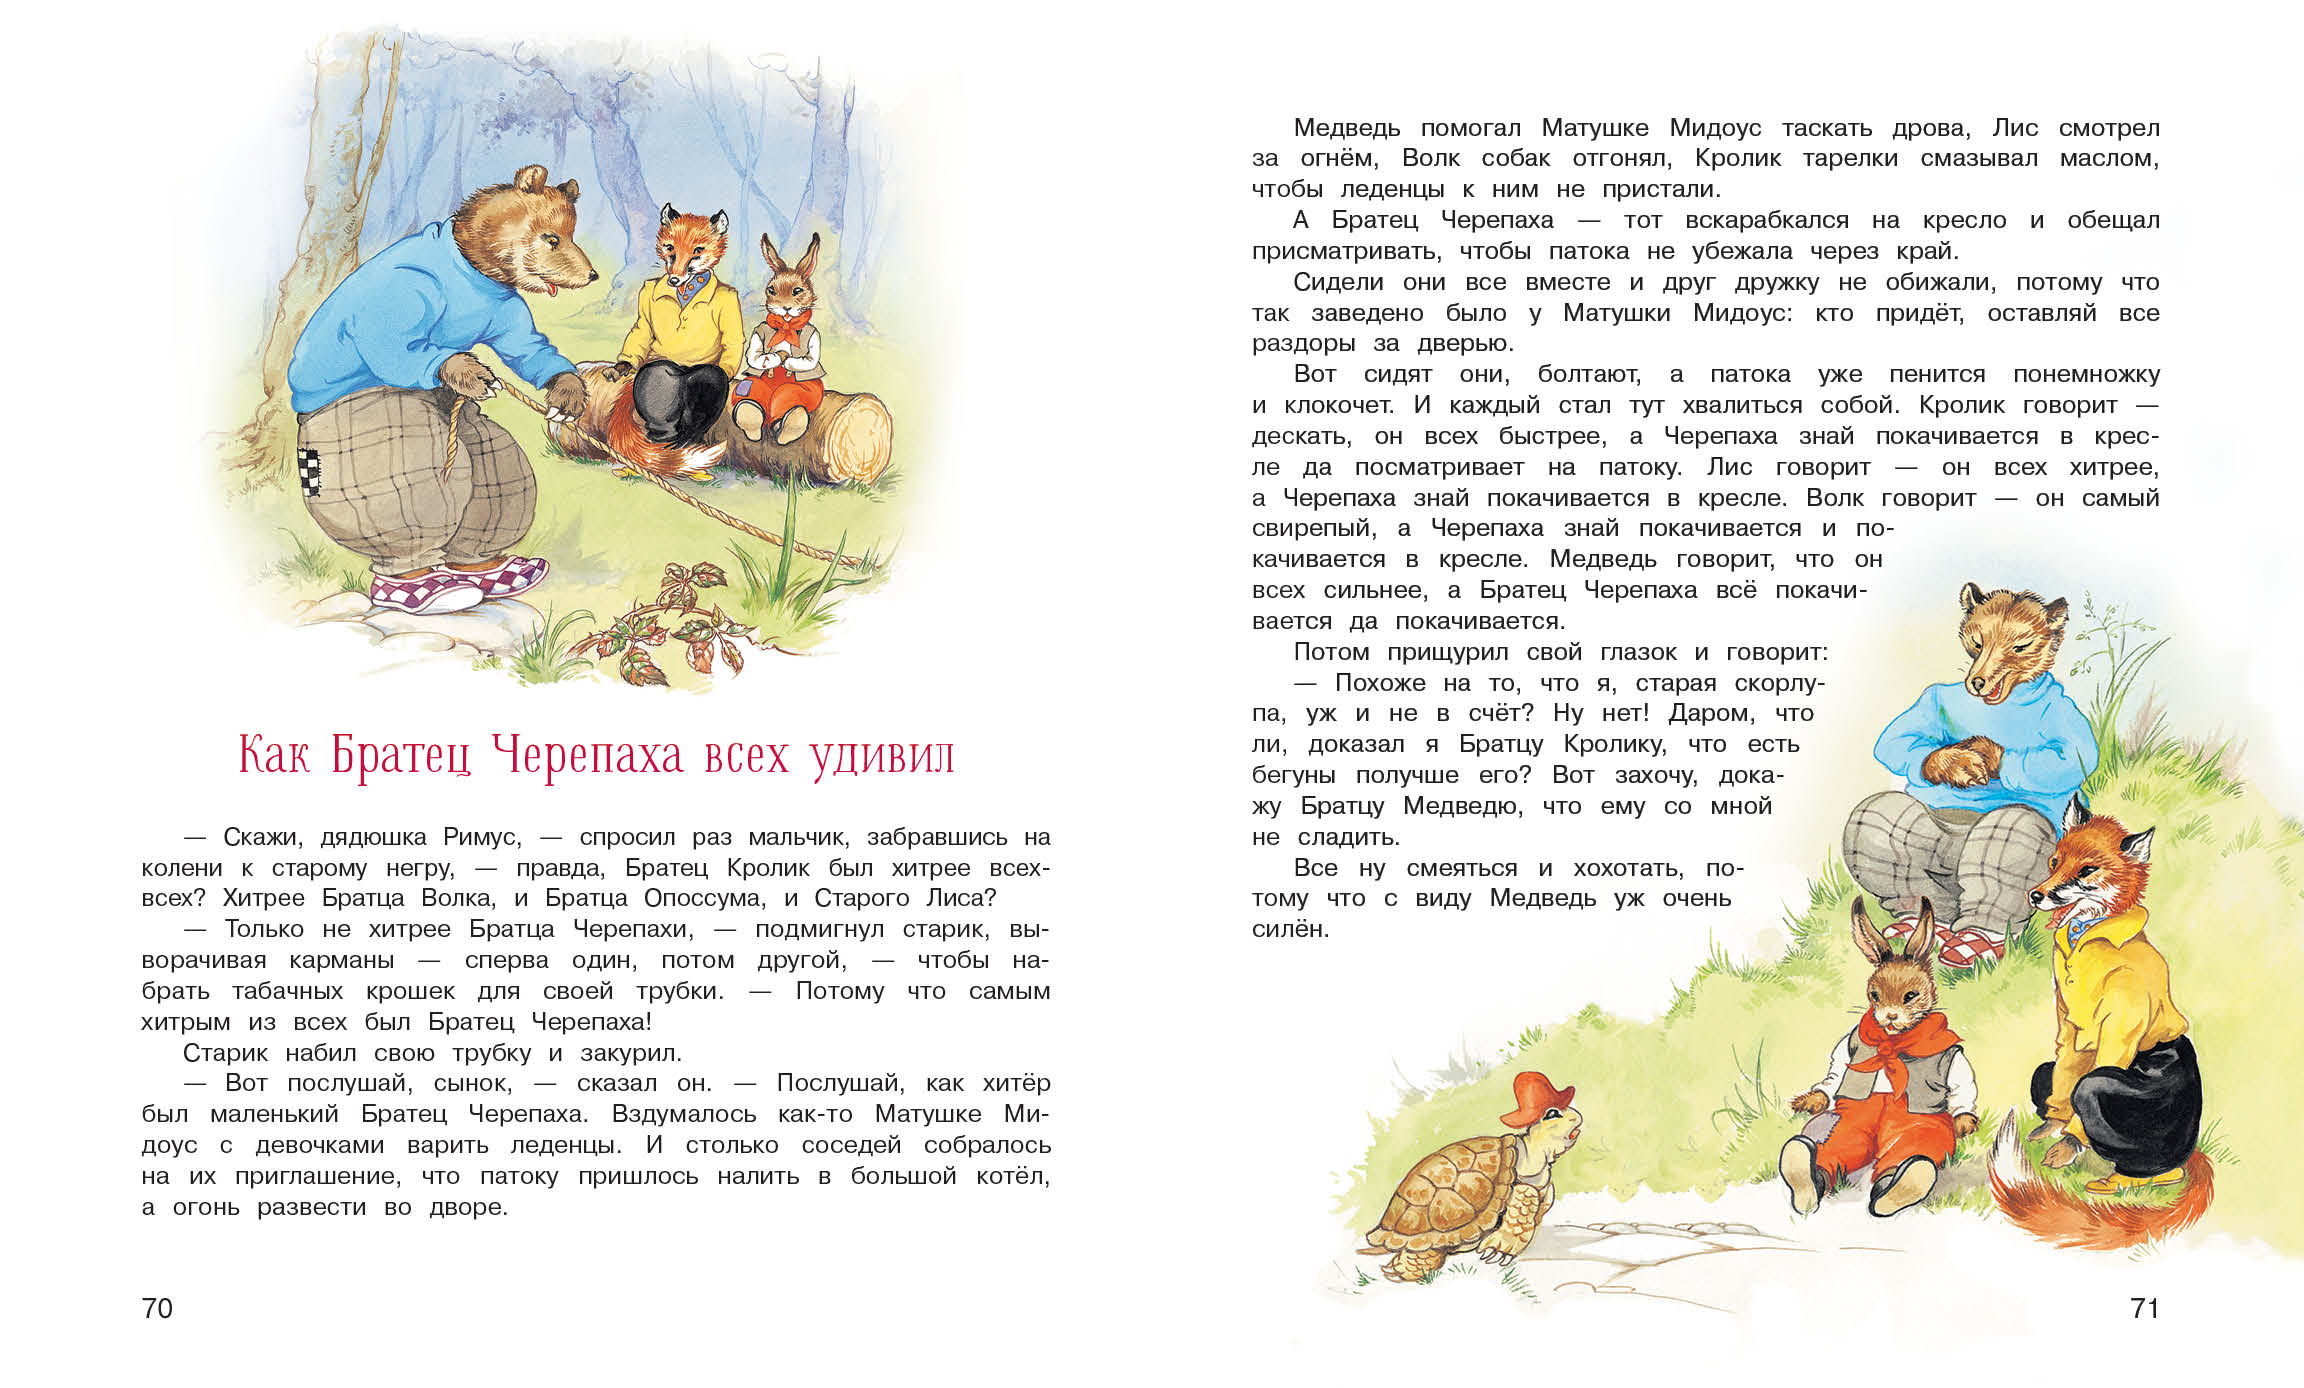 ТД Стрекоза 100 лучших книг. Сказки дядюшки Римуса 10330-1 - фото 3